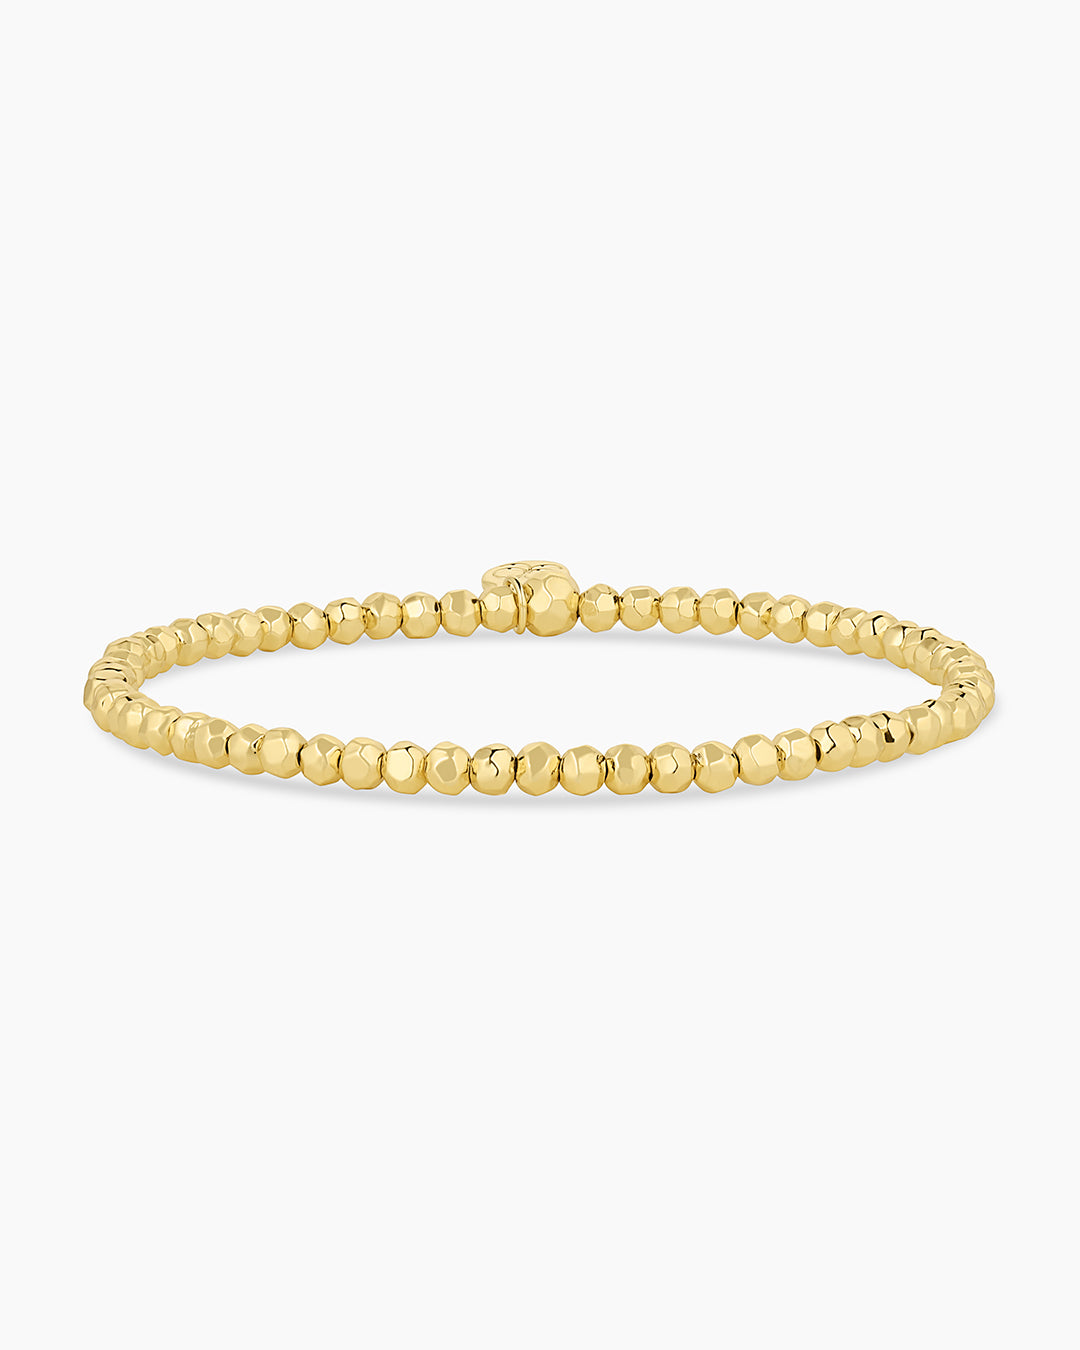 Gold Plated Bracelet, Gypset Delicate Bracelet || option::Gold Plated